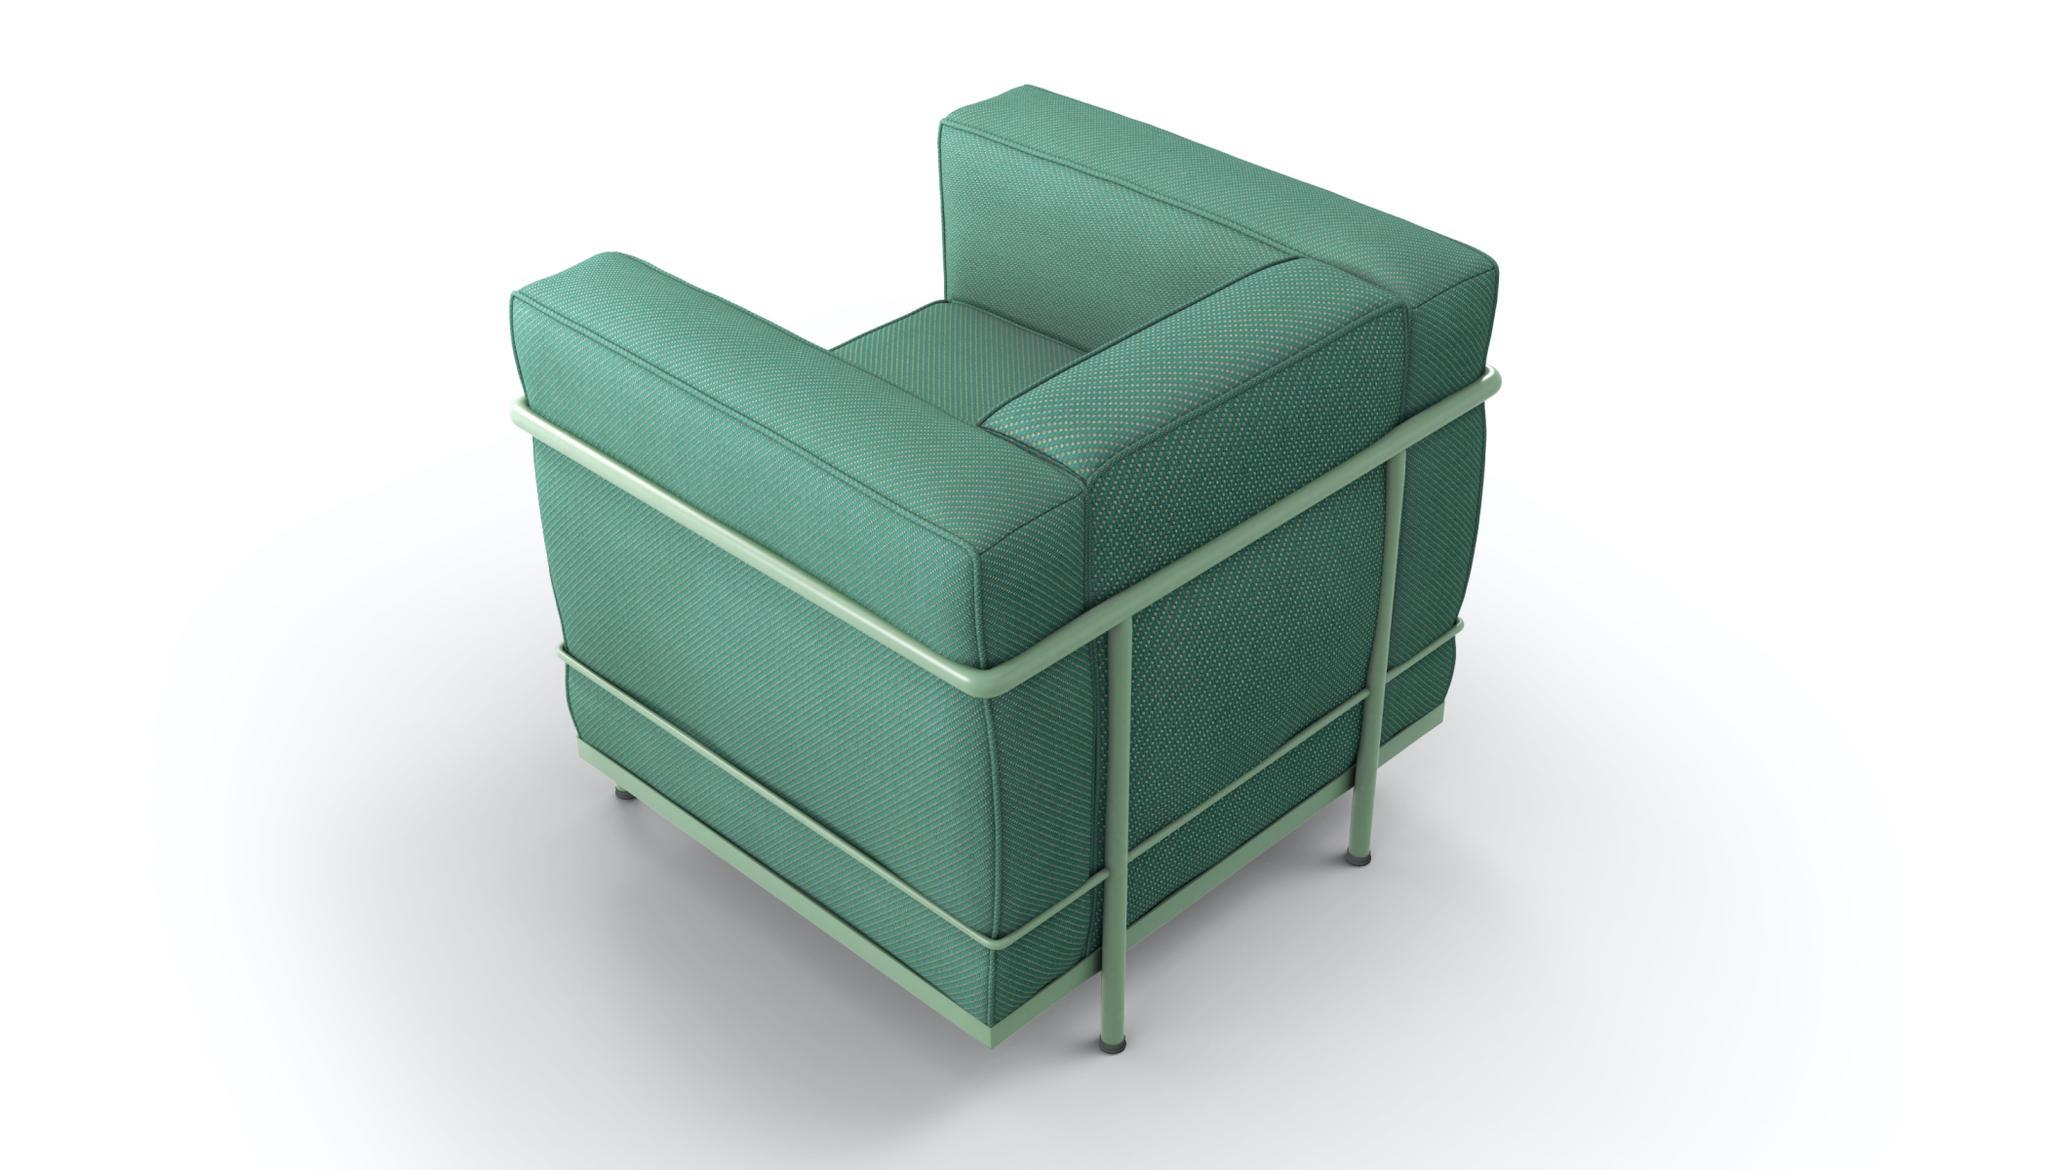 Sessel, entworfen von Le Corbusier, Pierre Jeanneret und Charlotte Perriand im Jahr 1928.
Hergestellt von Cassina in Italien.

Der zeitlose, einzigartige und zutiefst authentische LC2 Sessel hat die Geschichte des Möbeldesigns mitgeschrieben und